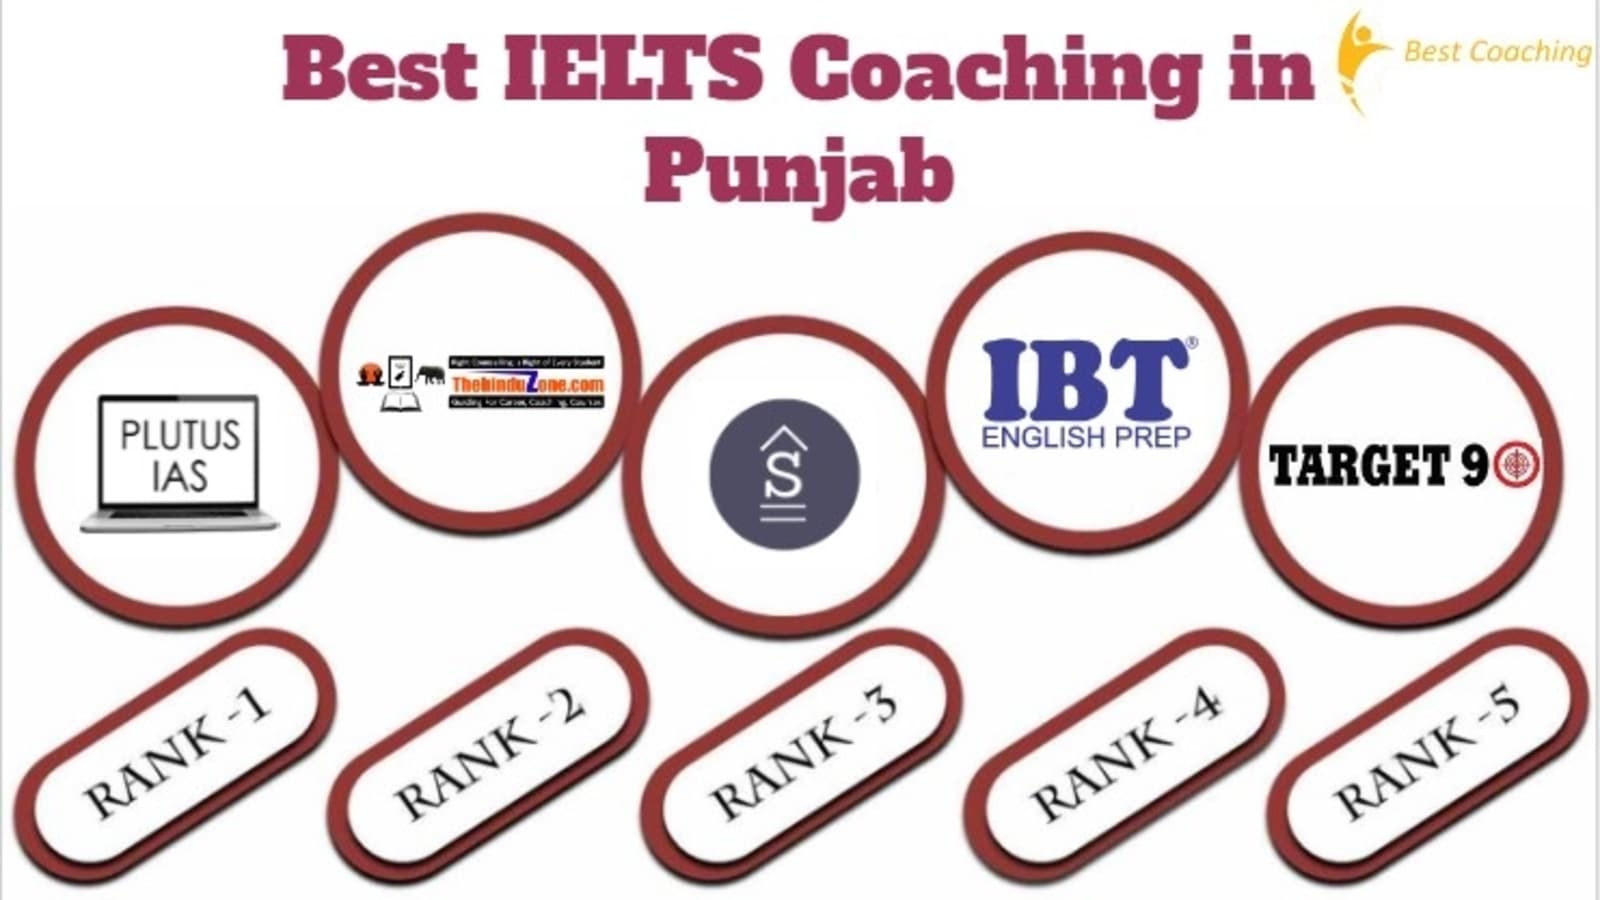 Best IELTS Coaching in Punjab